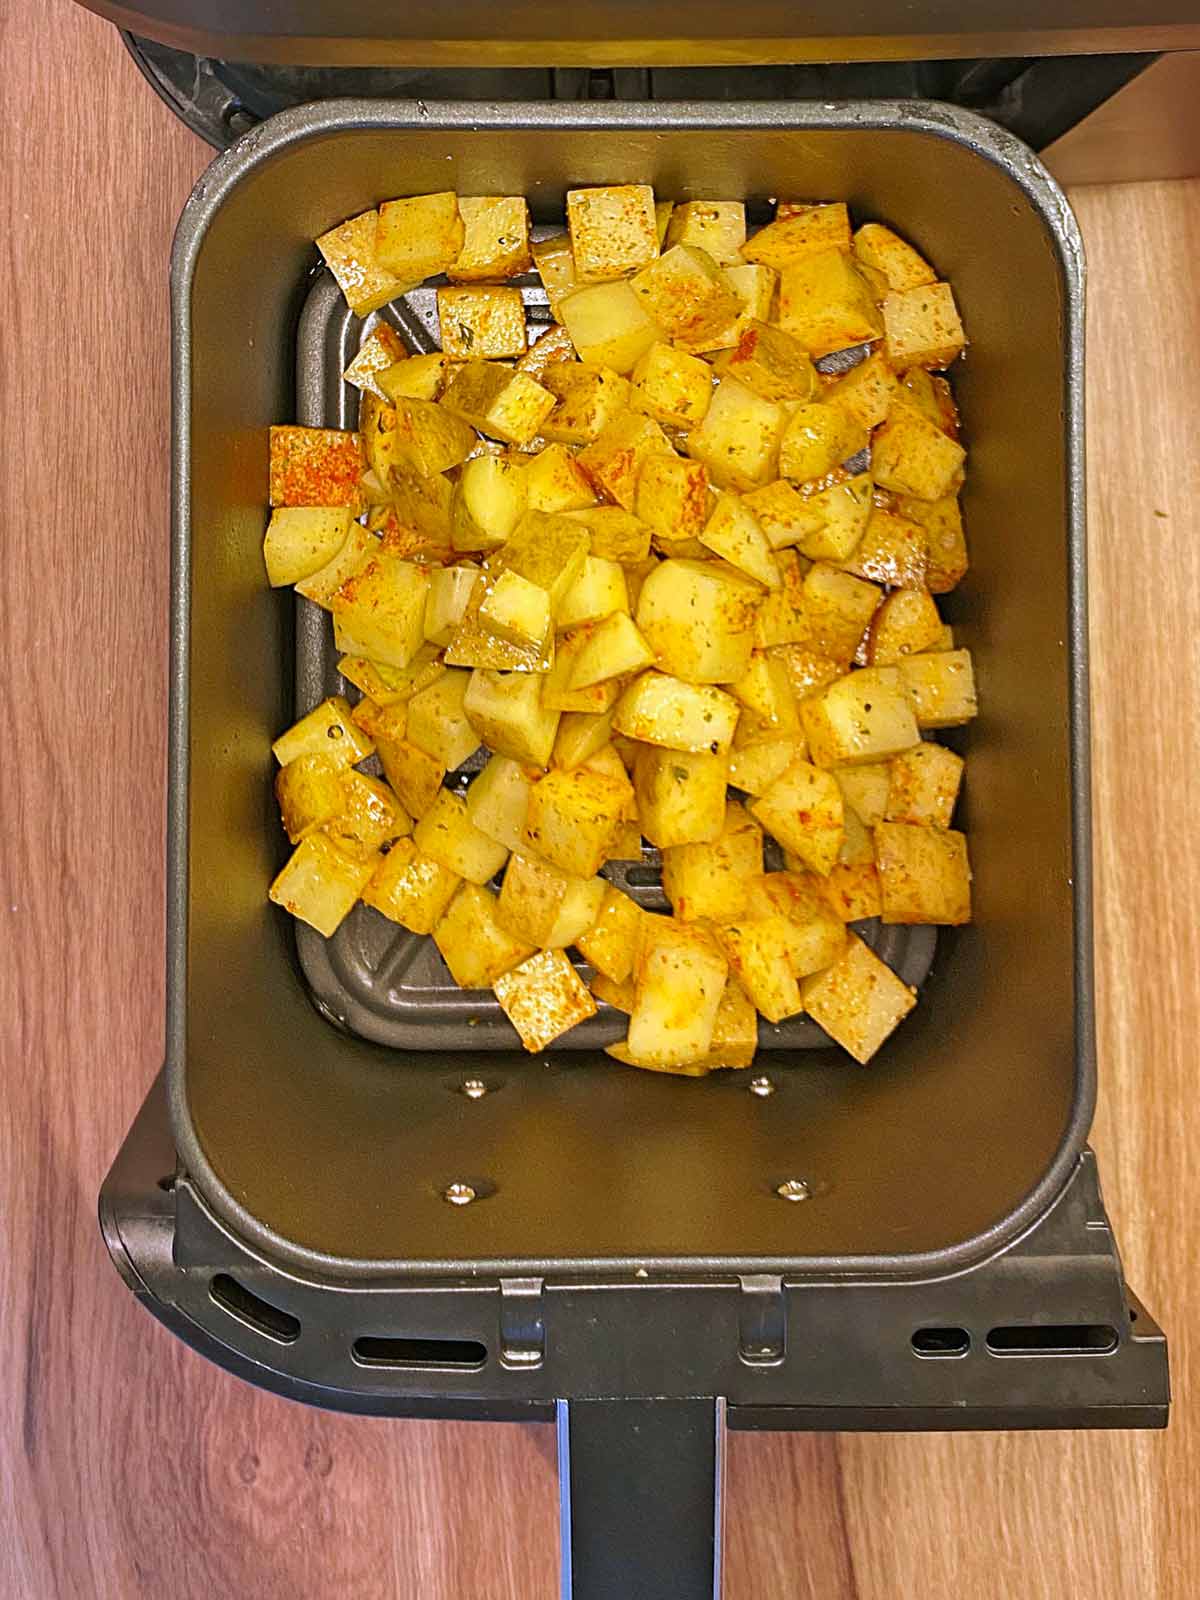 Cubes of seasoned potato in n air fryer basket.